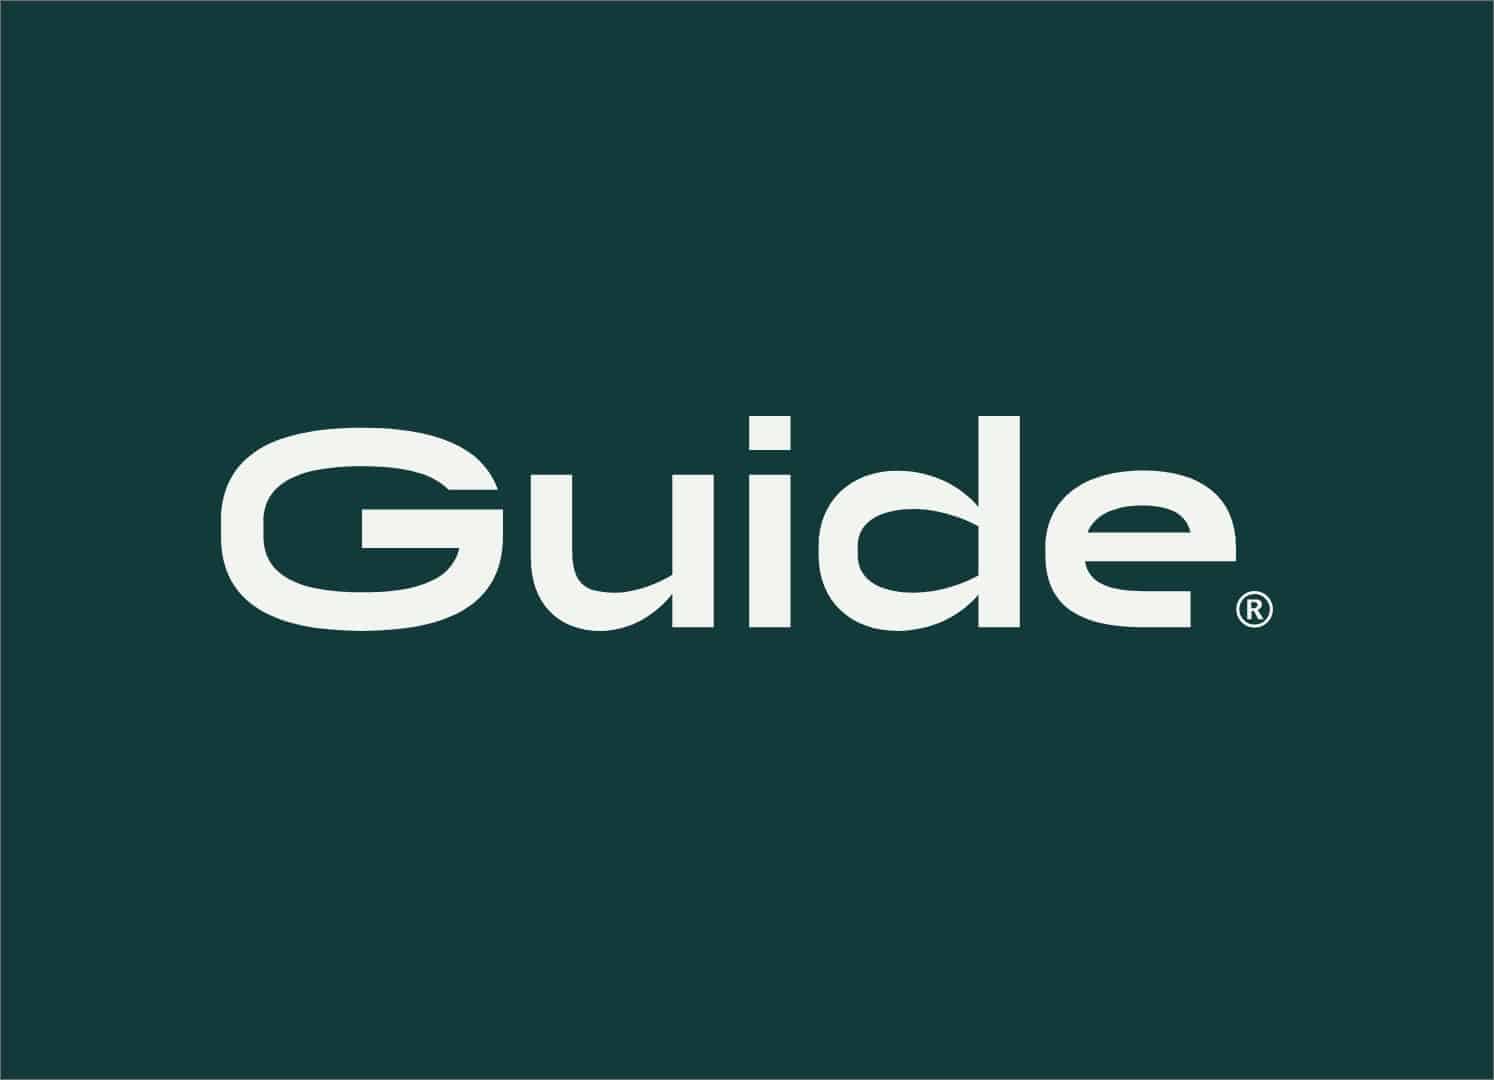 Gestora Guide fornecerá crédito aos clientes com ajuda da fintech Nobli